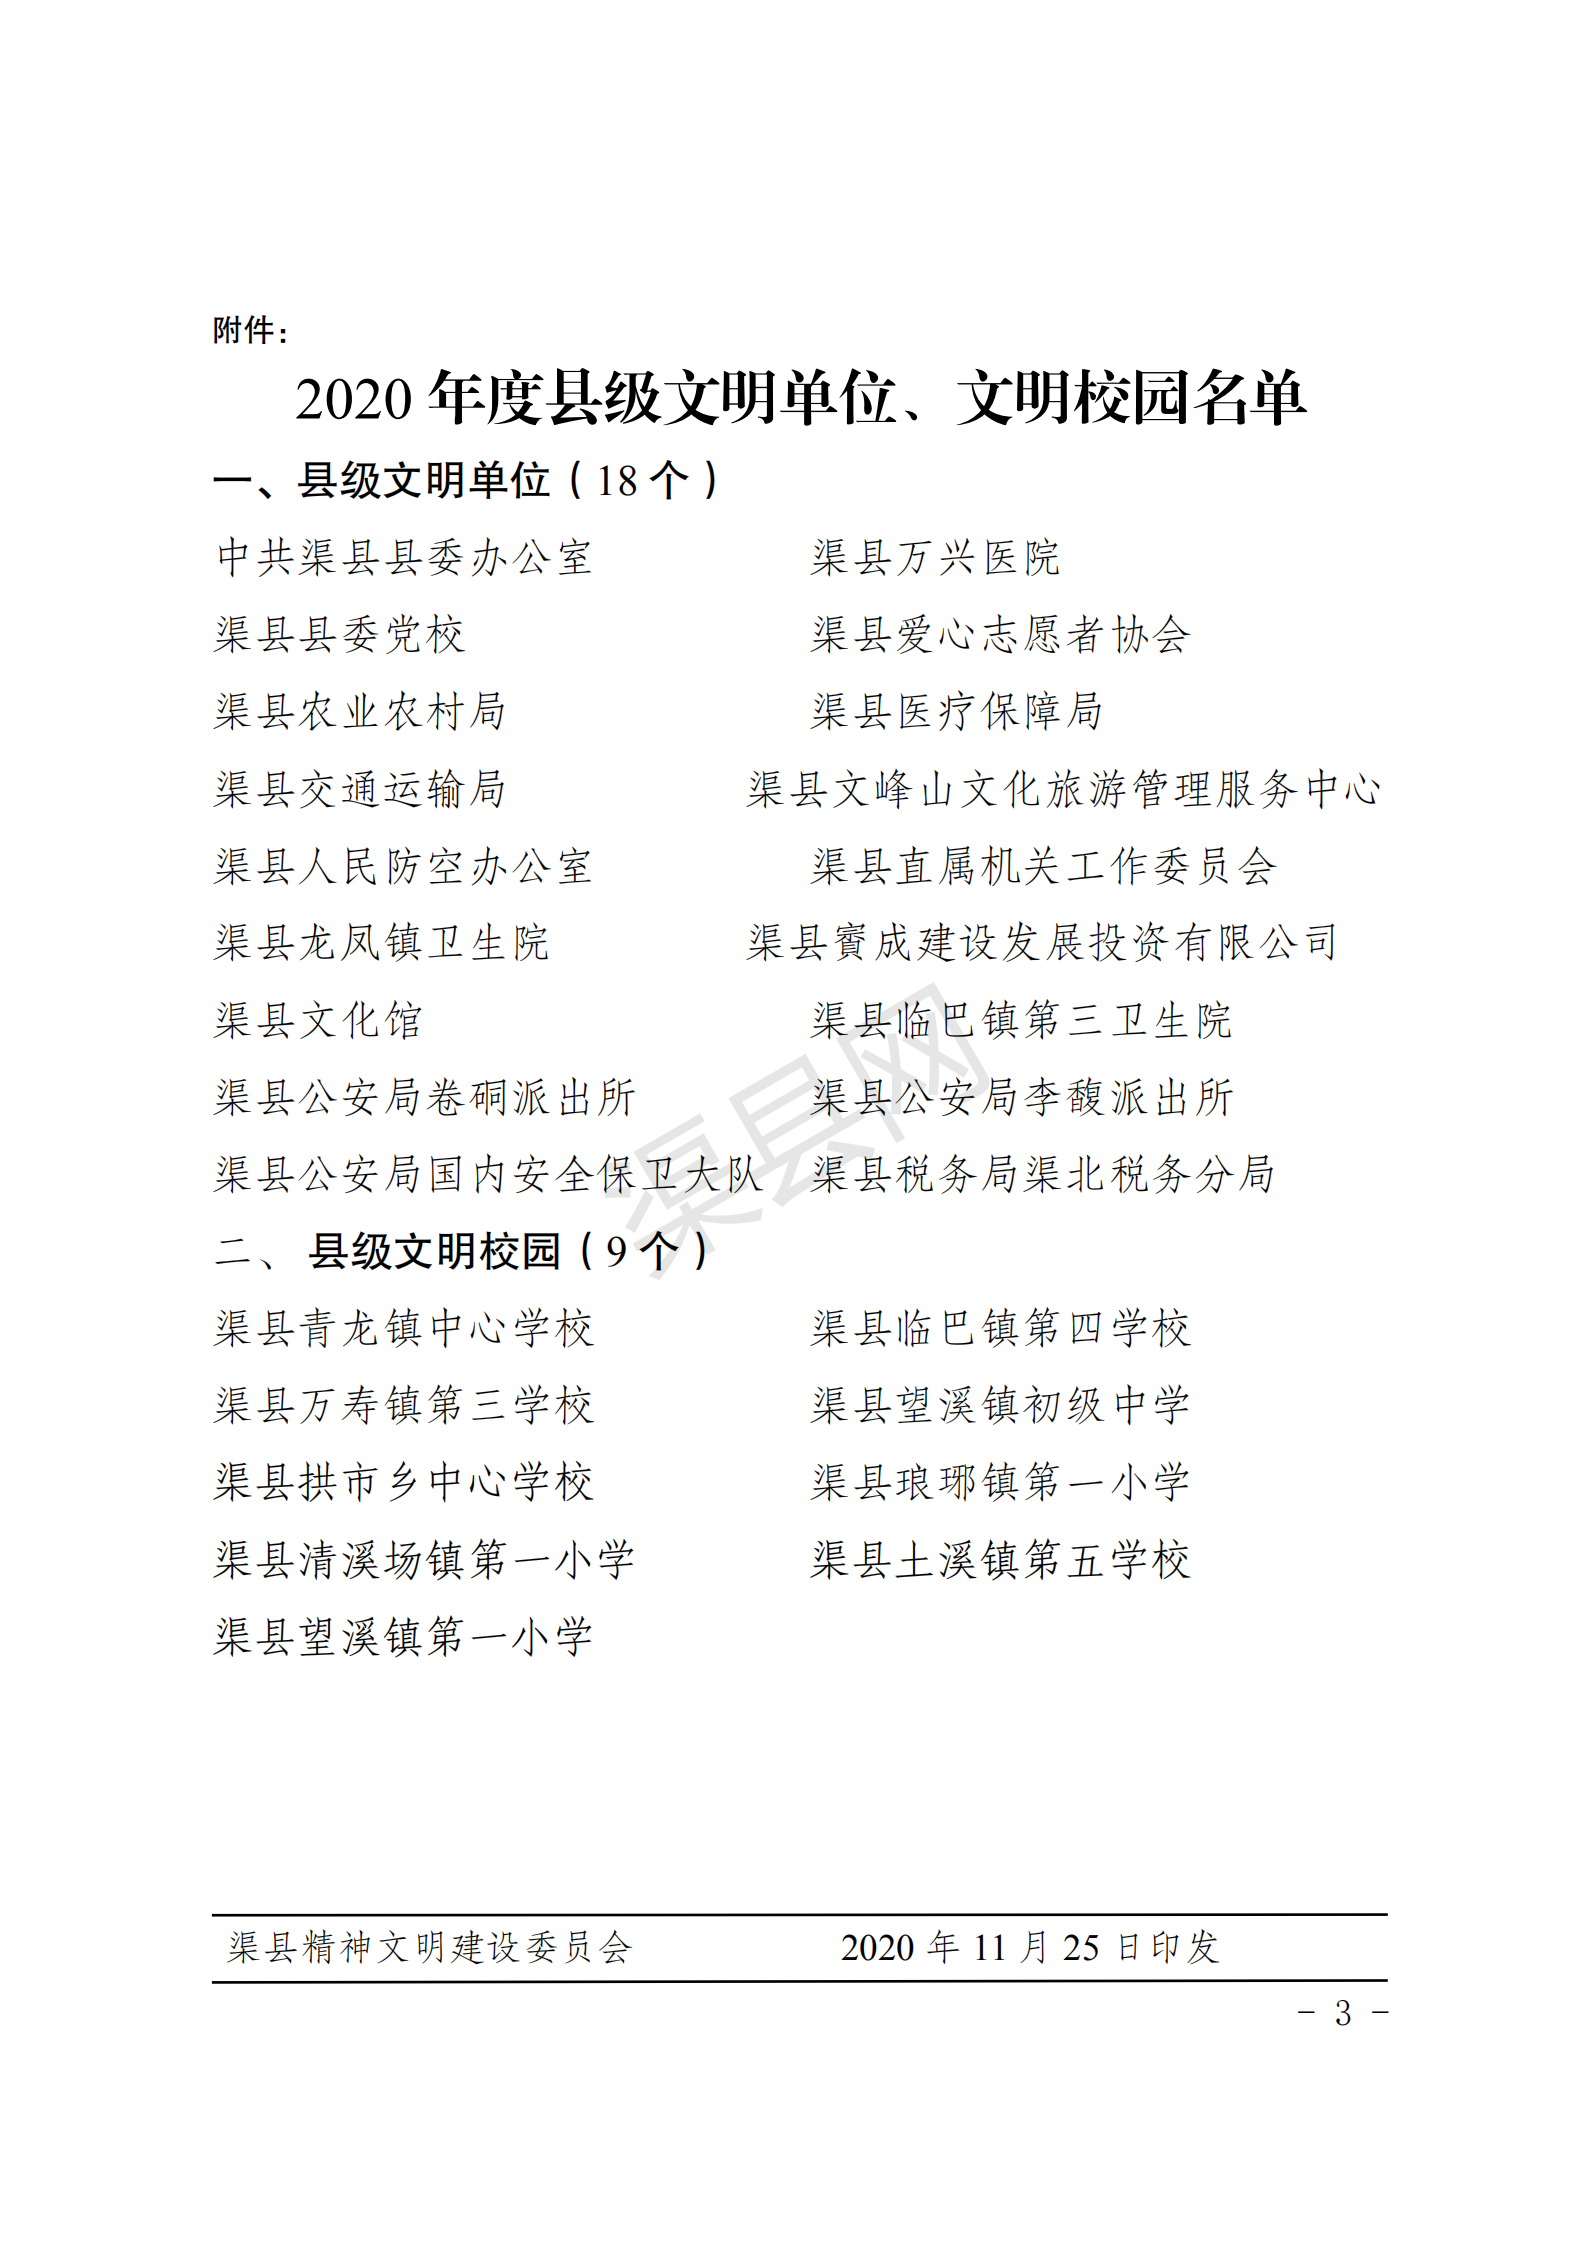 3_2020县级文明单位村校园文件_02.png